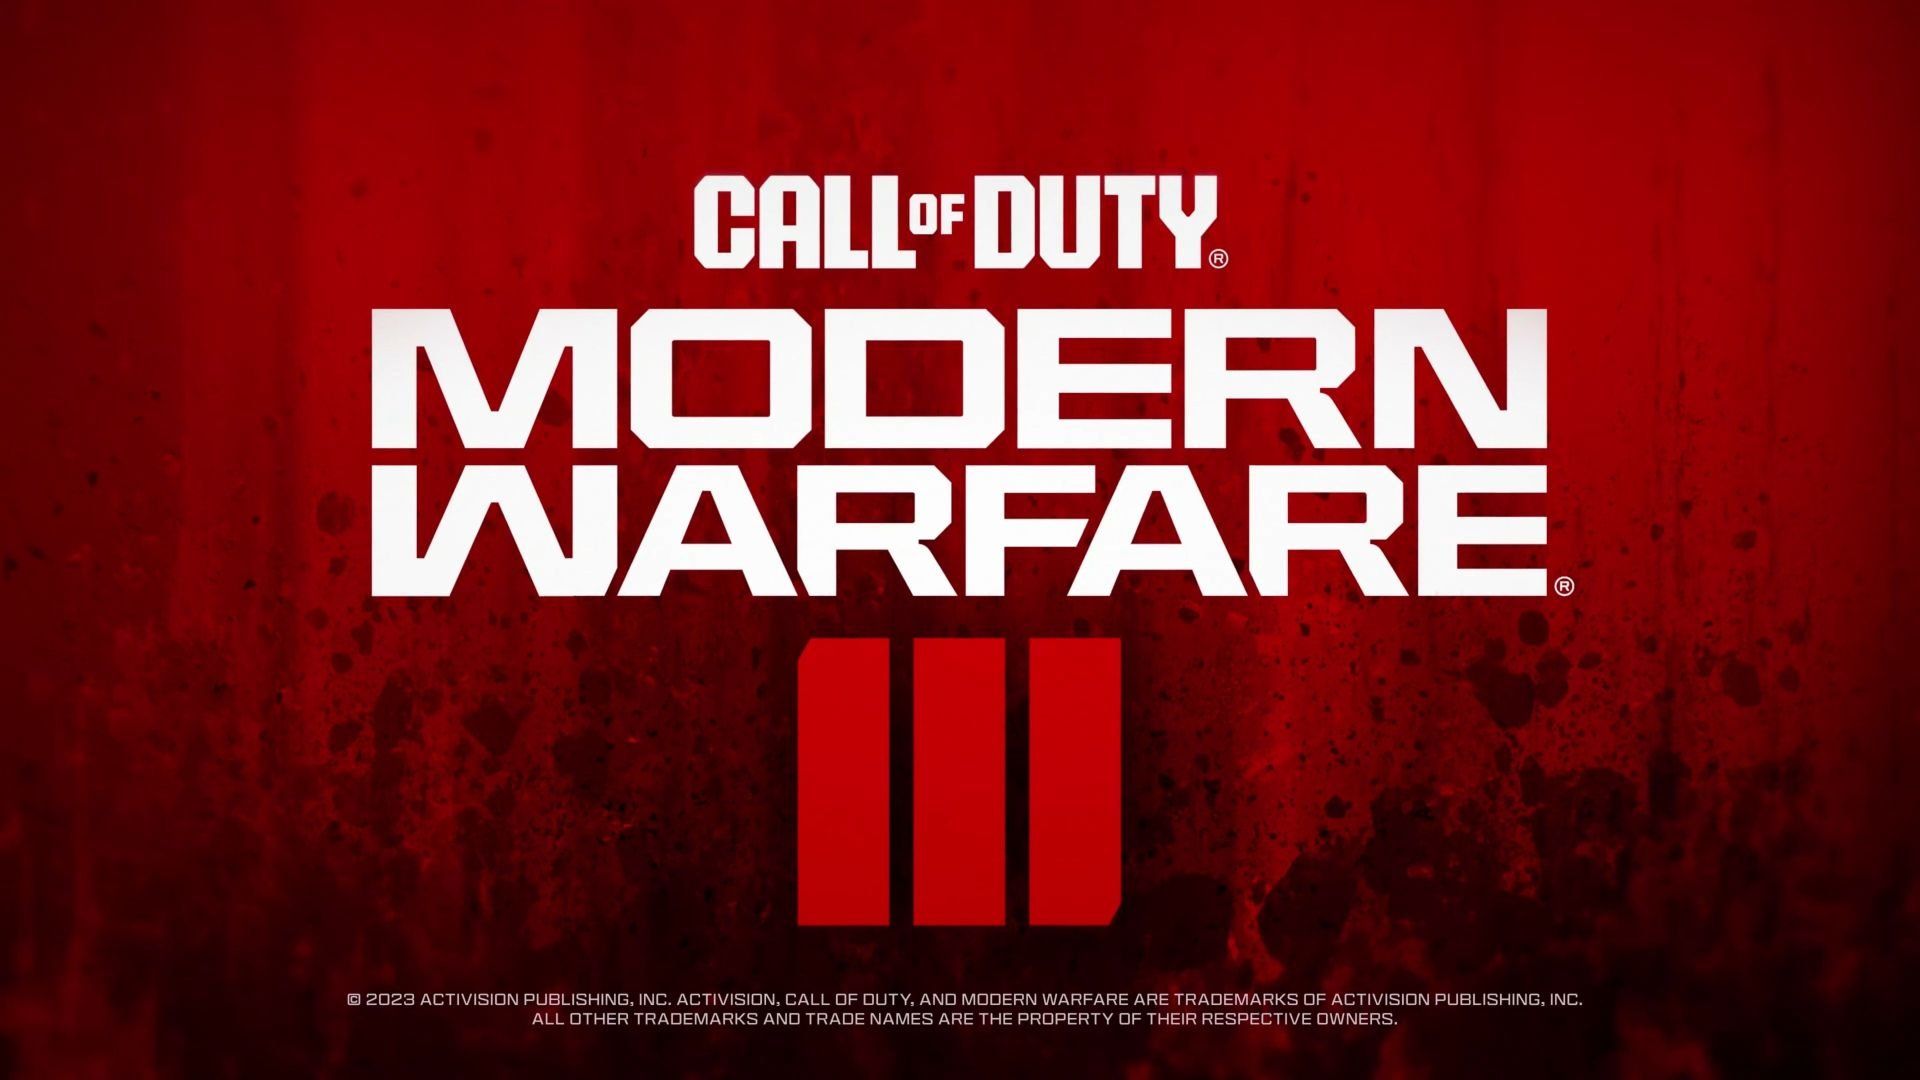 "Elles sont magnifiques", les premières cartes inédites de Modern Warfare 3 se dévoilent, et elles plaisent déjà beaucoup aux joueurs de Call of Duty